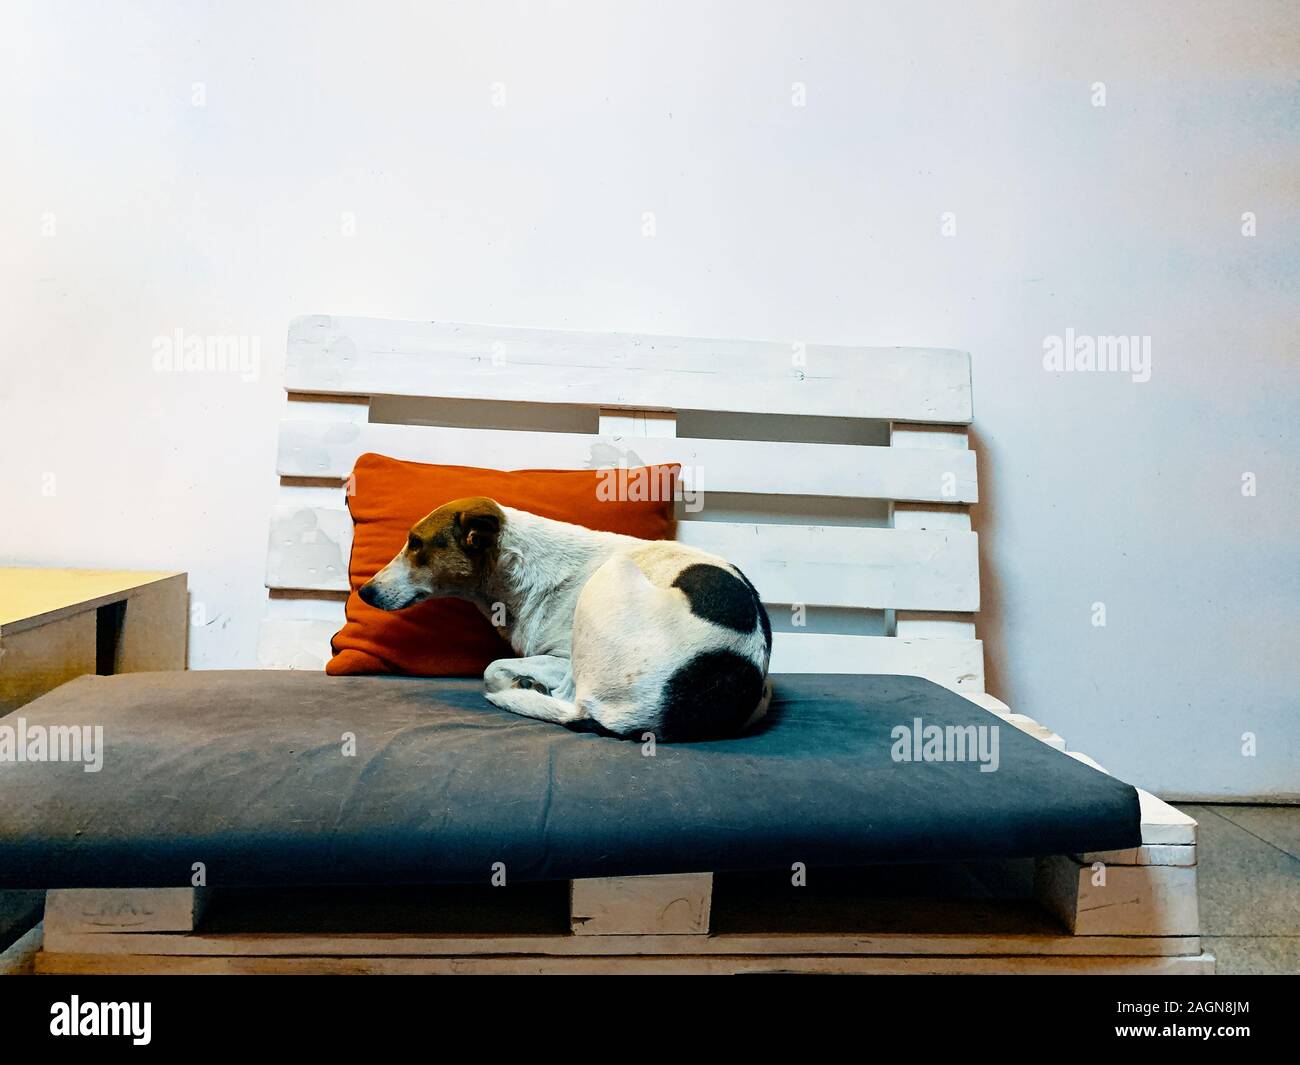 Tier schlafen. Doggy liegend auf einer Couch in einem hellen Raum  Stockfotografie - Alamy